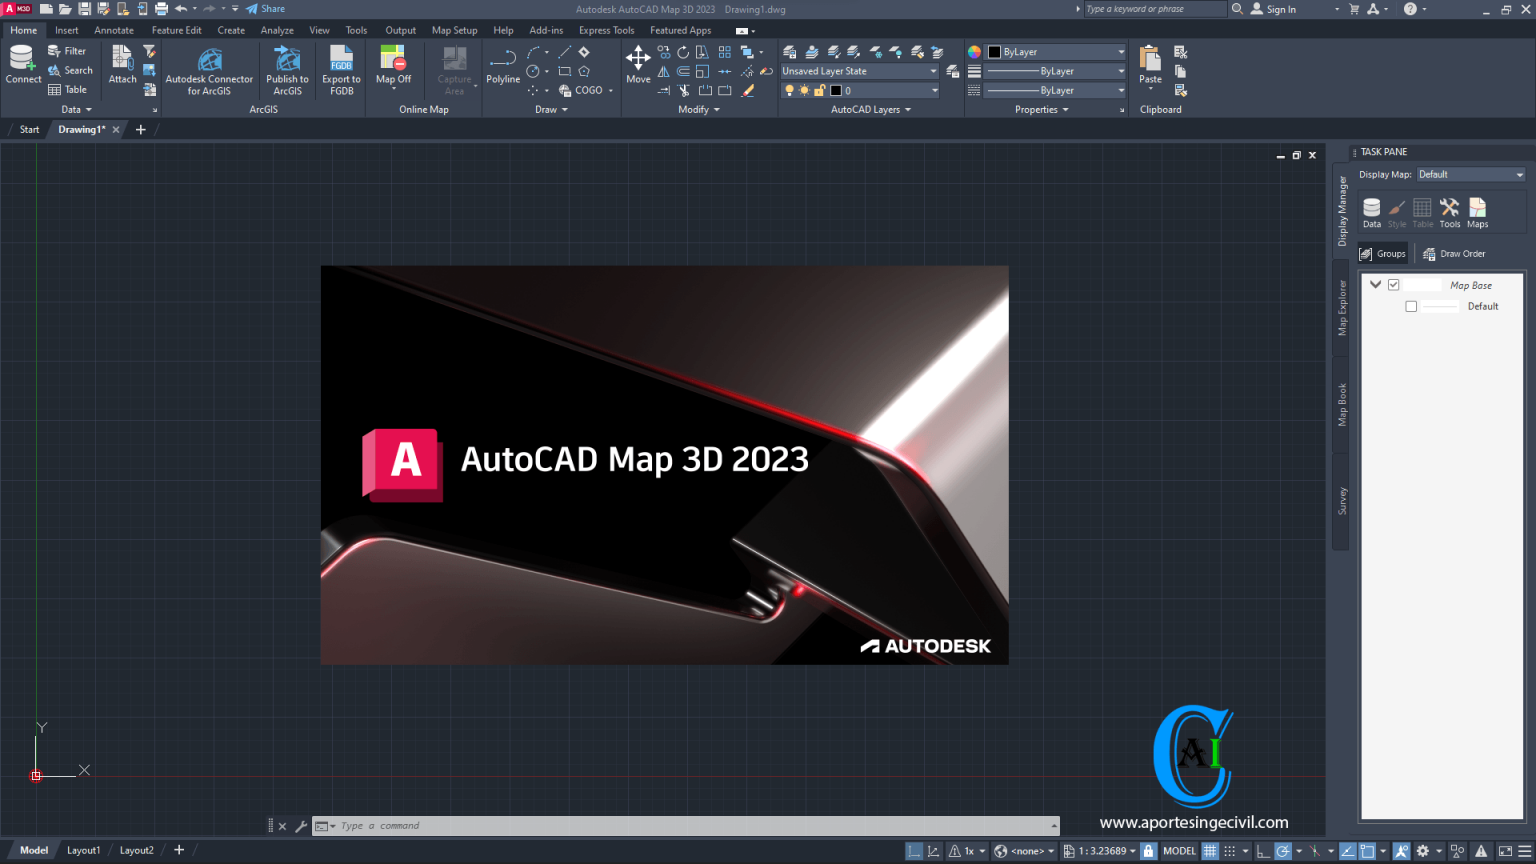 Autodesk AutoCAD Map 3D 2023 1536x864 